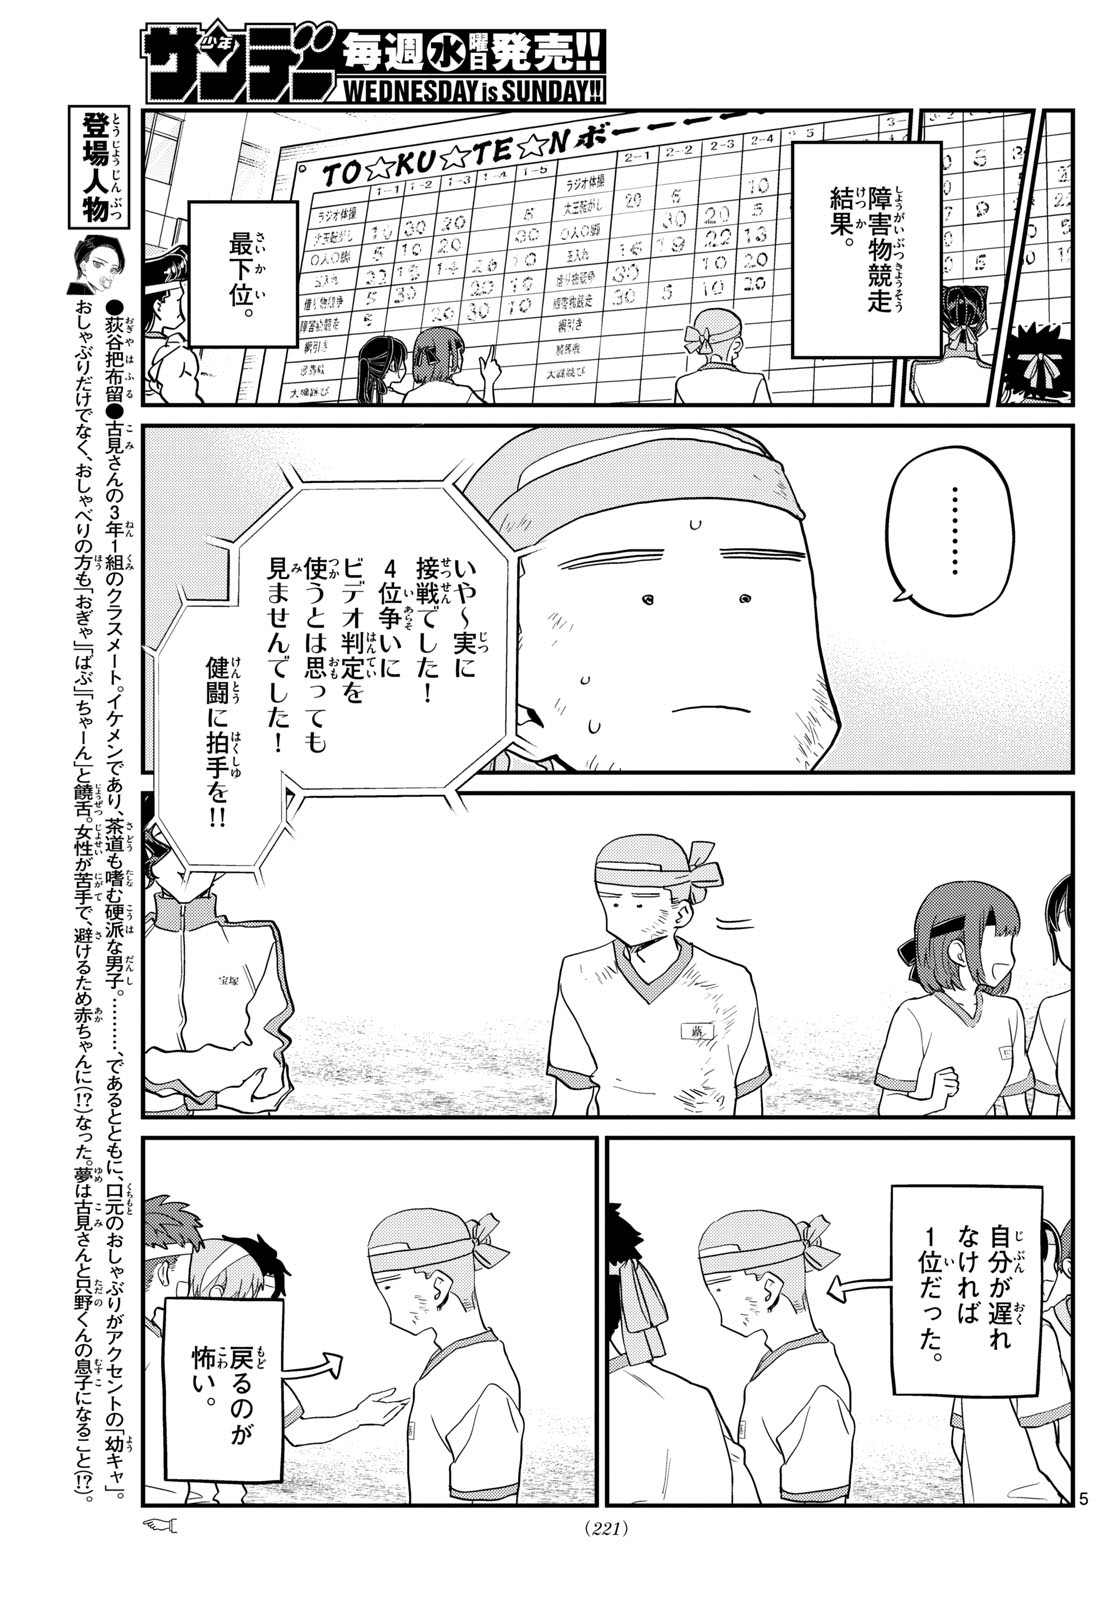 komi-san chapter 430 - English Scans